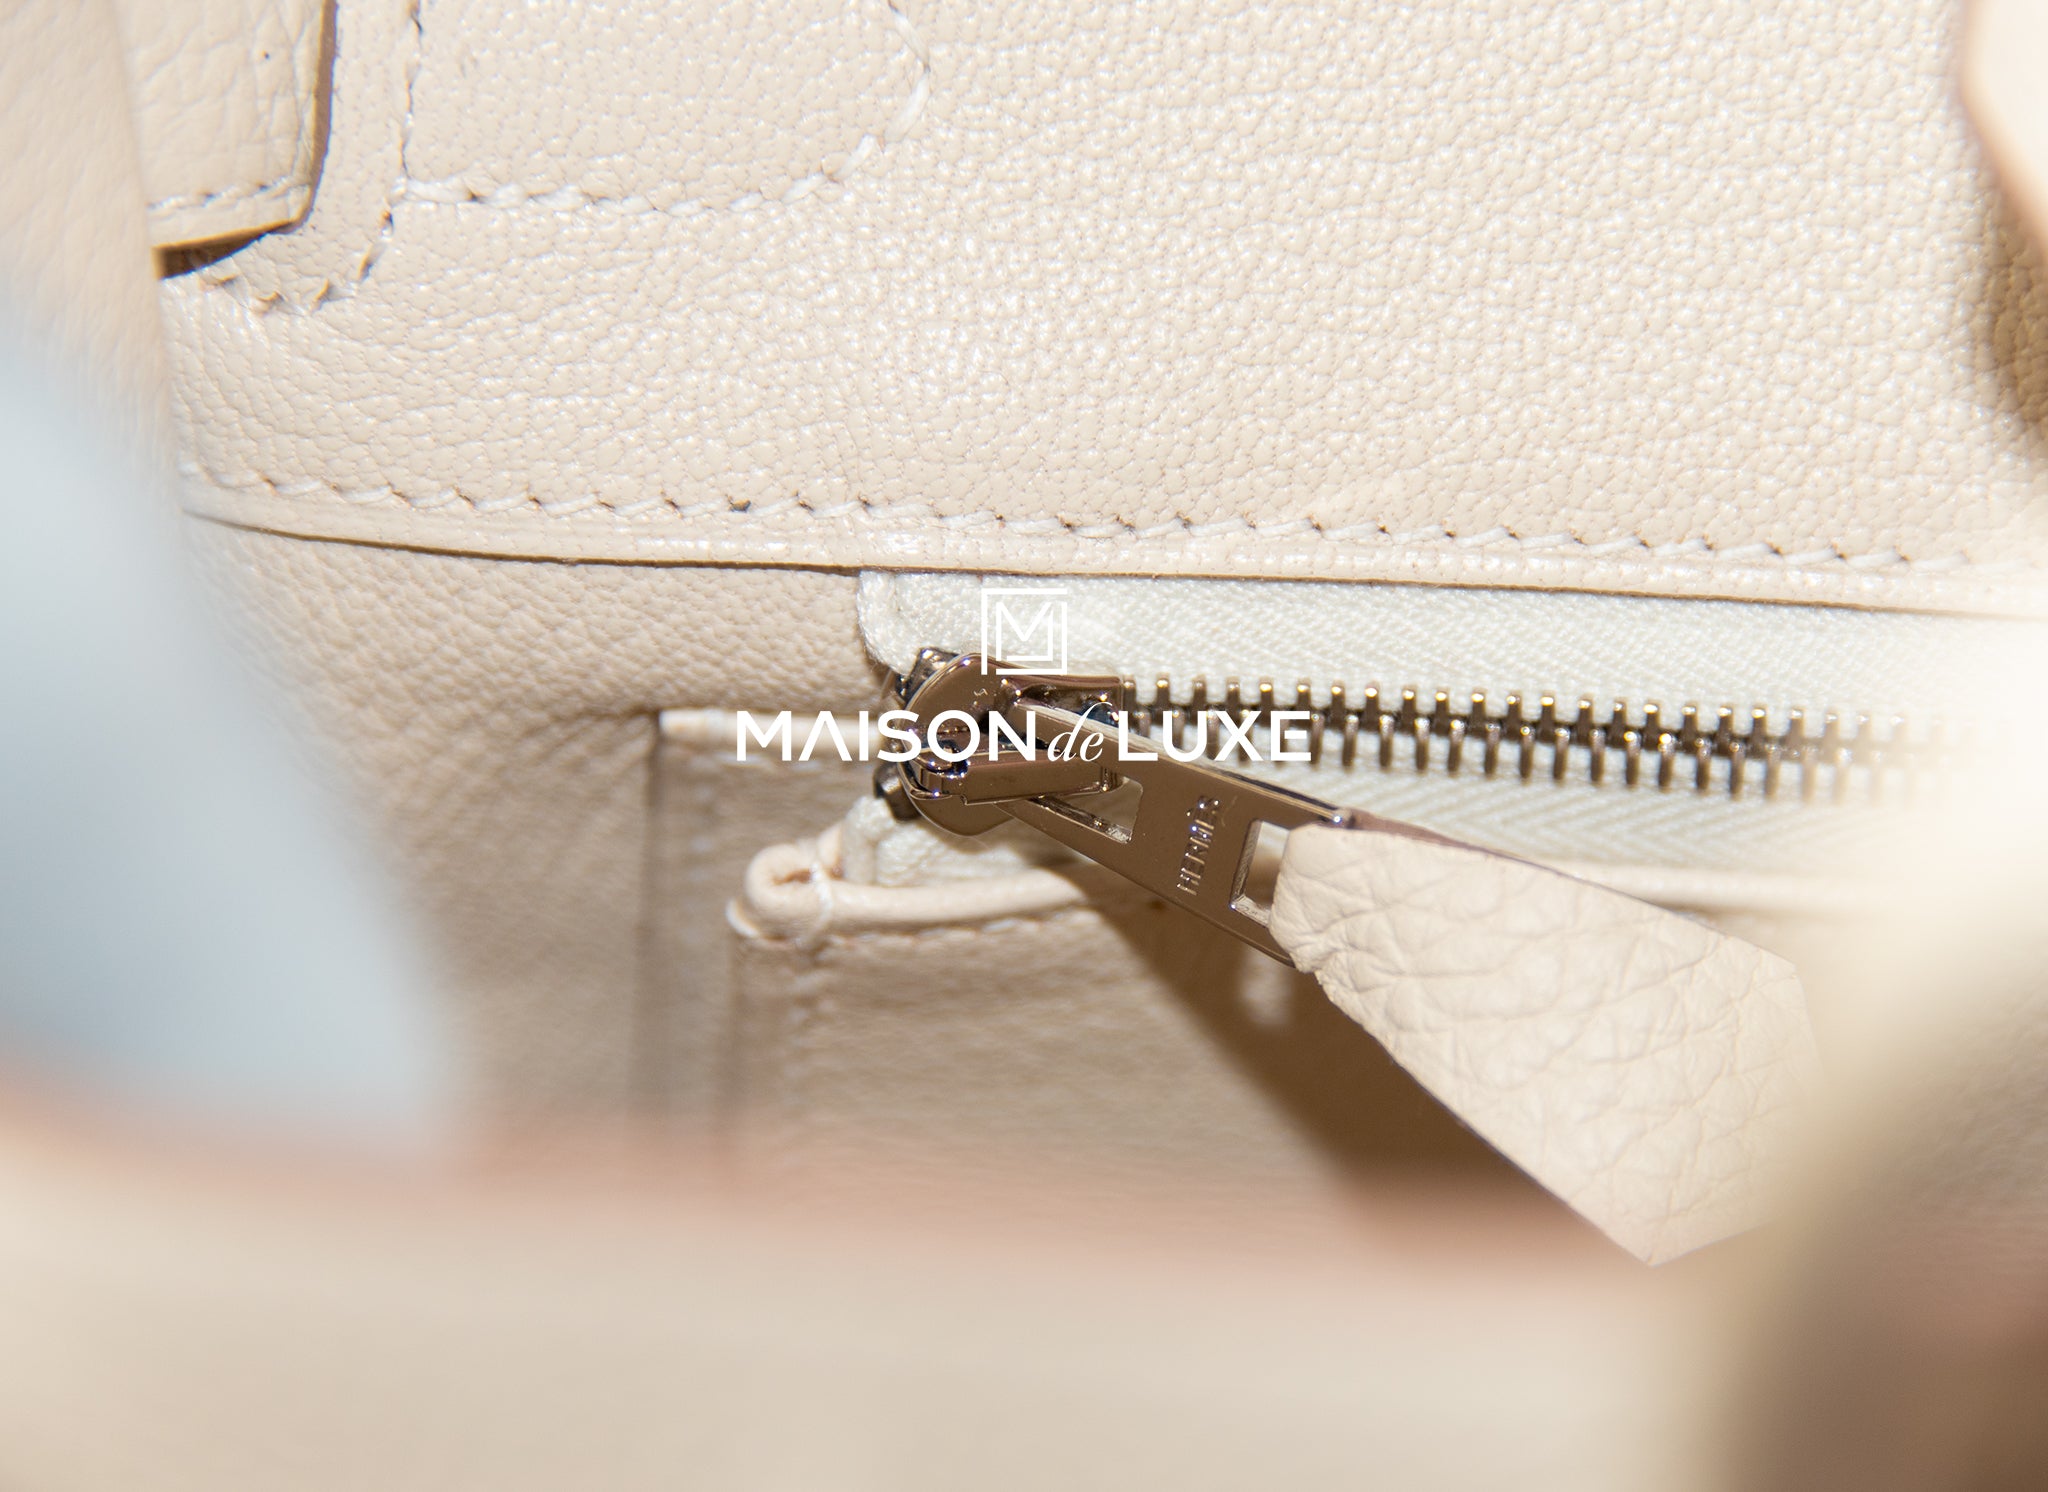 Hermes Craie Off White Togo Palladium Hardware Birkin 25 Handbag Bag –  MAISON de LUXE